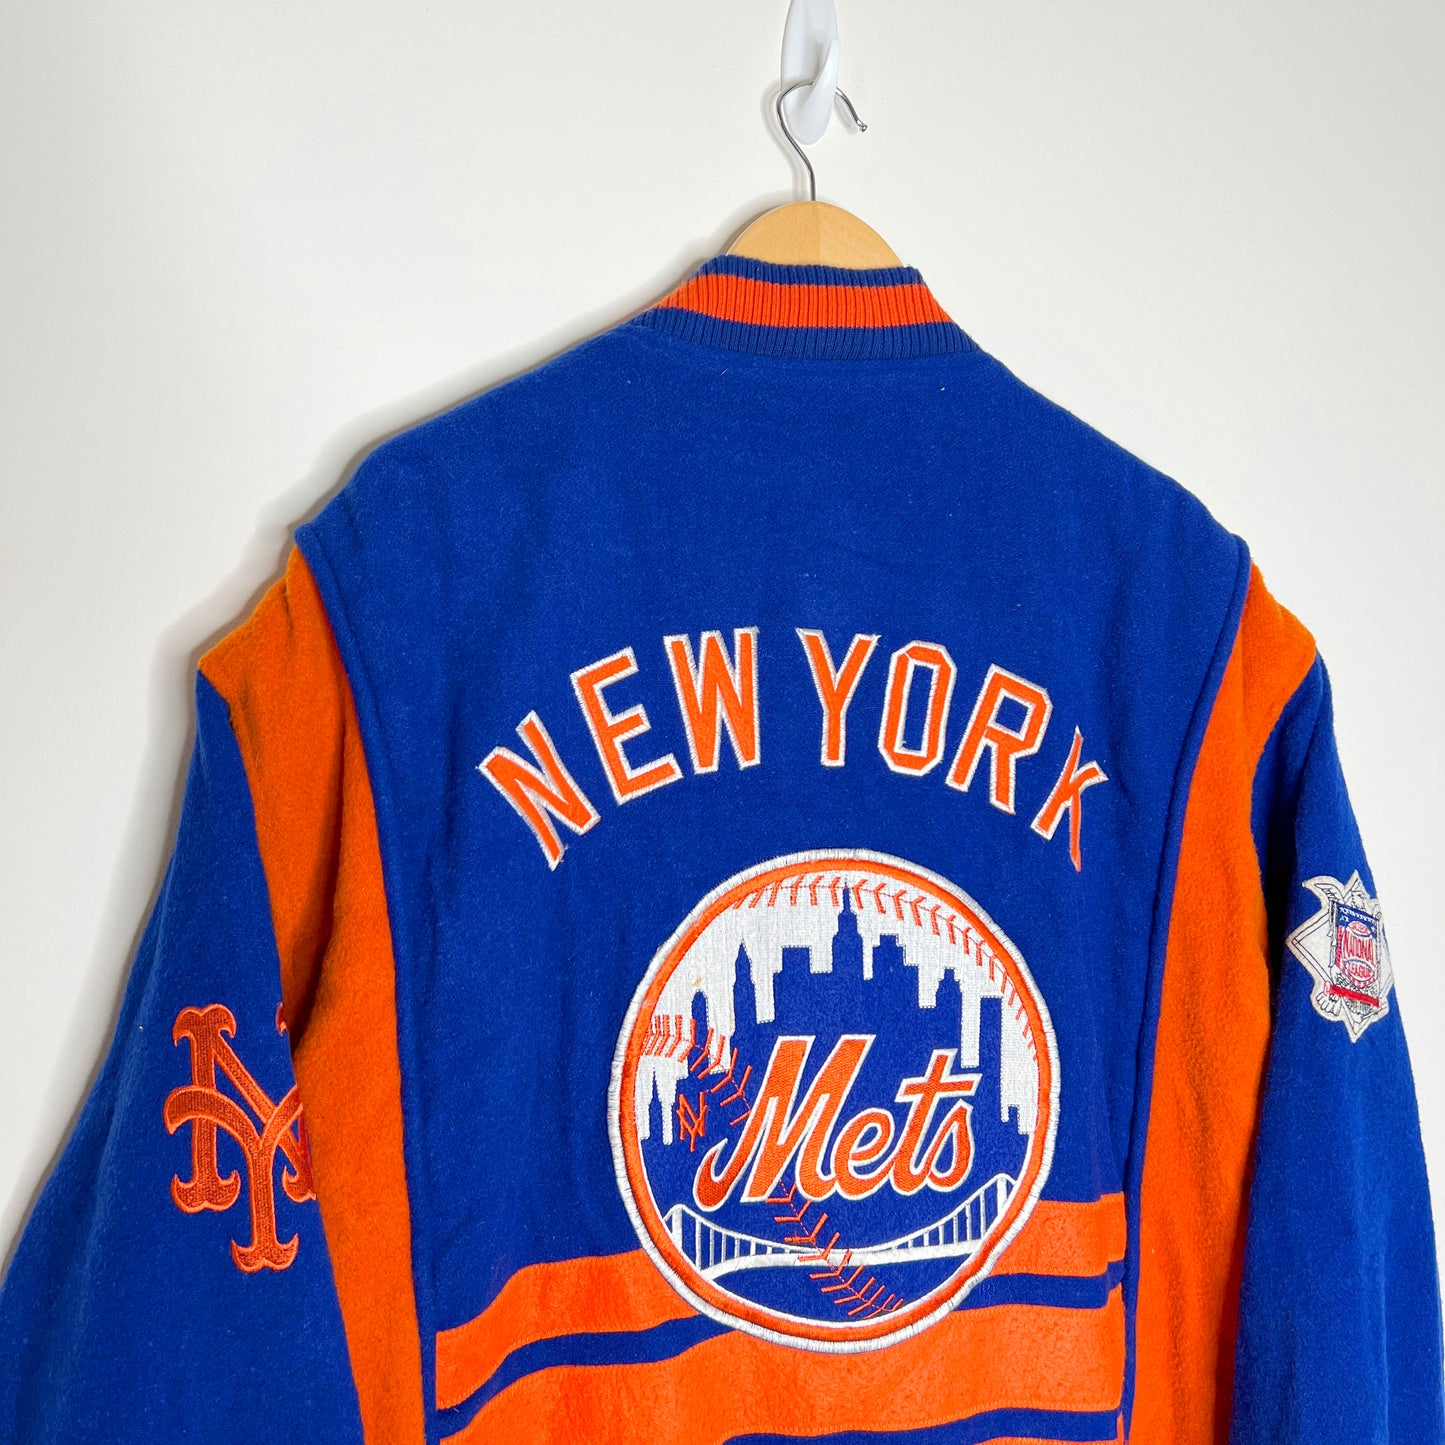 Vintage New York Mets Nutmeg by Campri Jacket